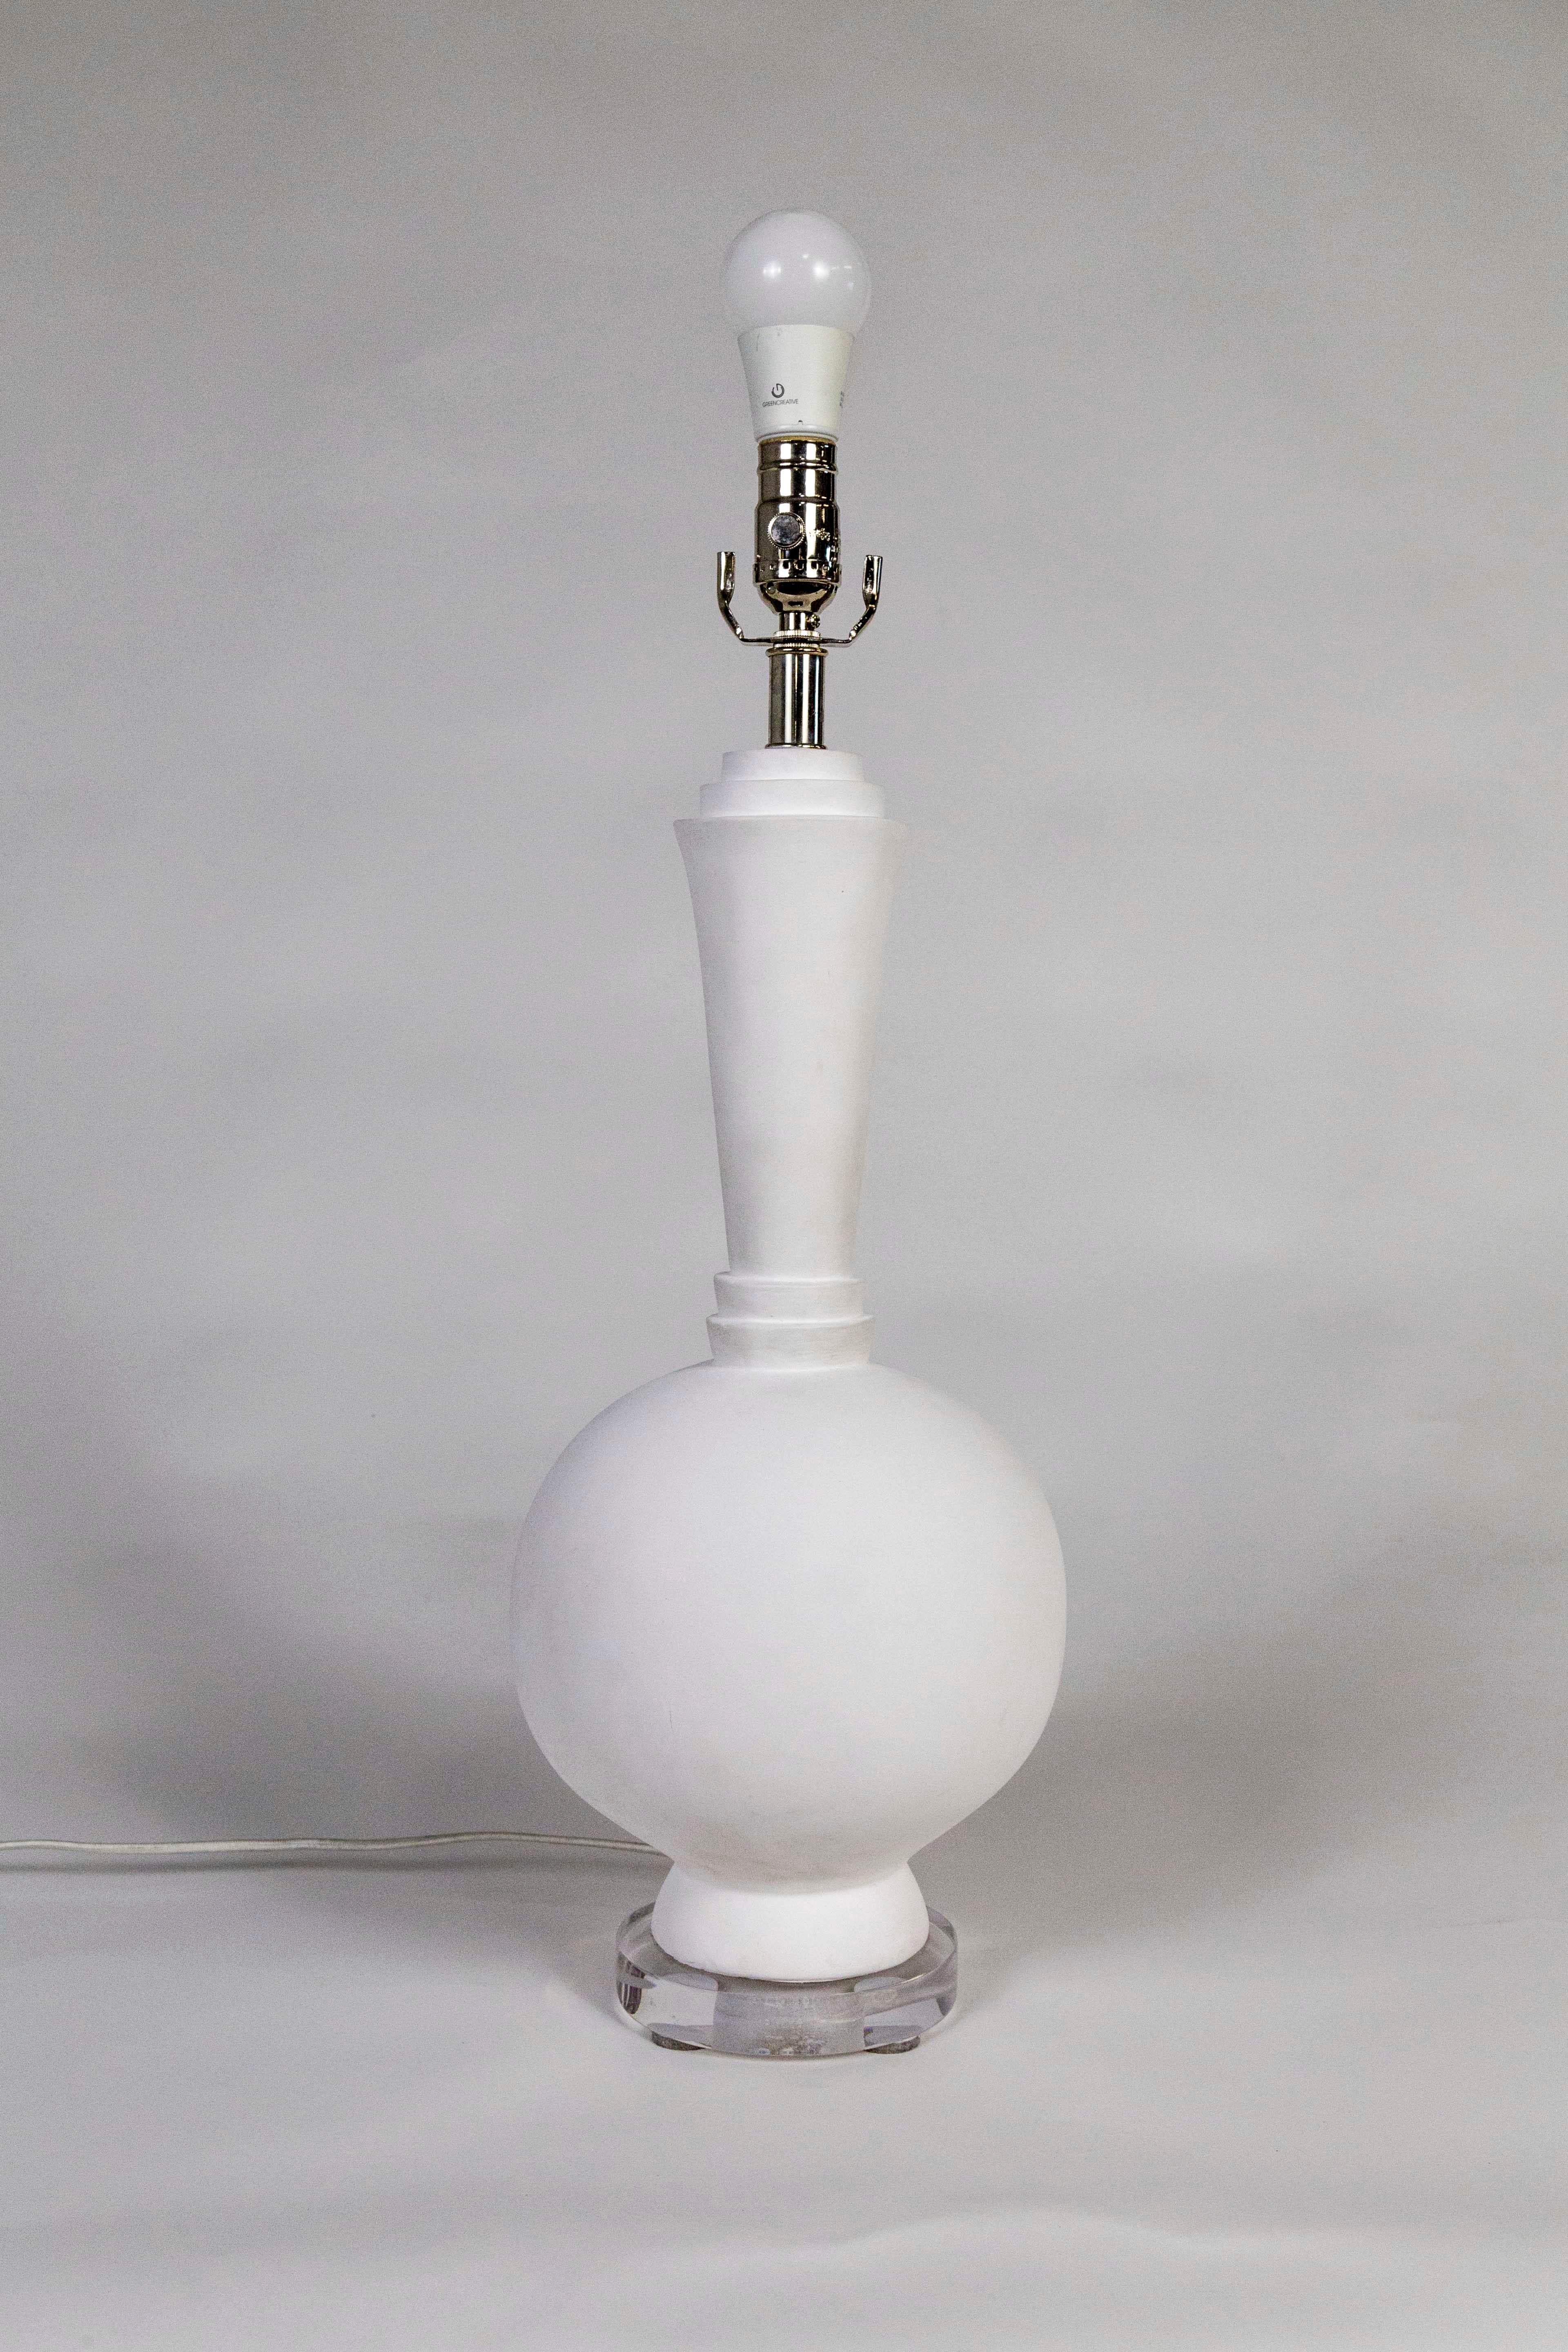 1939 World's Fair Plaster Lamp For Sale at 1stDibs